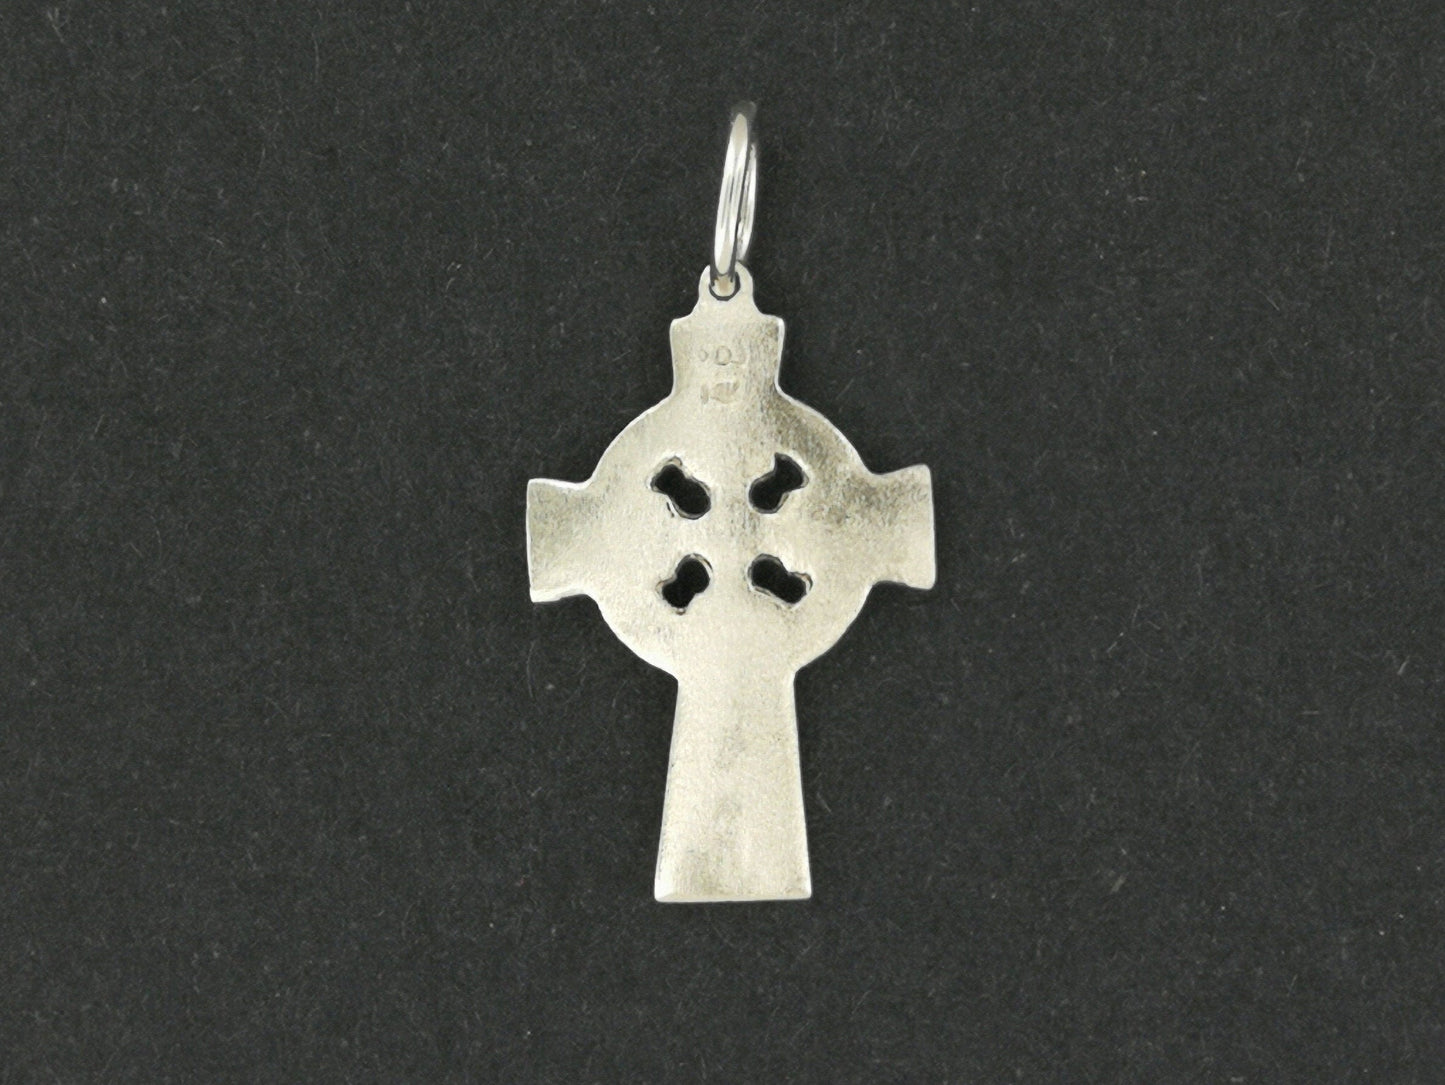 Petite croix celtique en argent sterling ou bronze antique